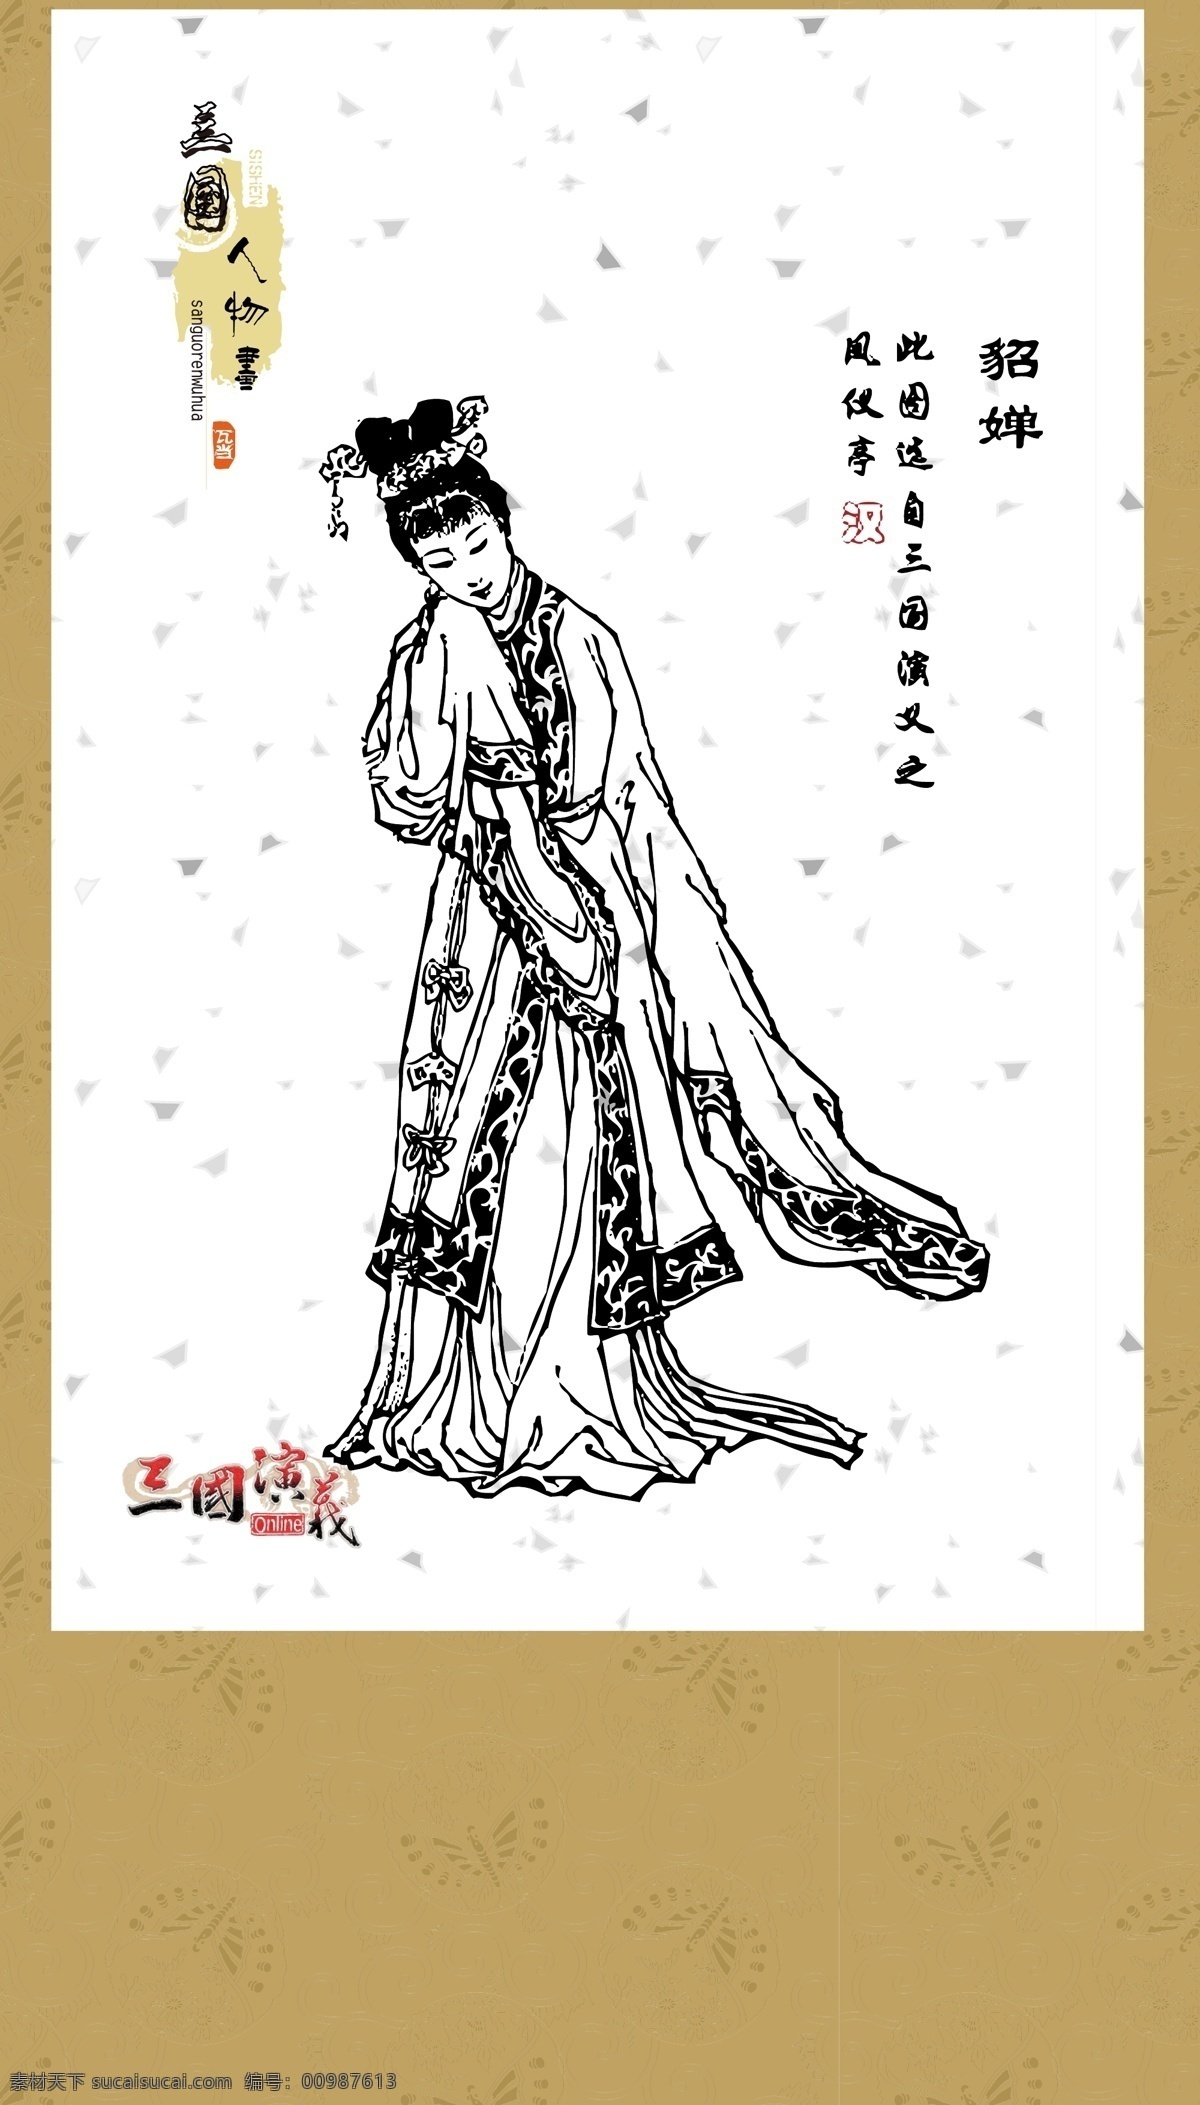 三国演义 人物画 系列 白描 图案 绘画 古典 传统纹样 人物 神话传说 传统文化 文化艺术 矢量